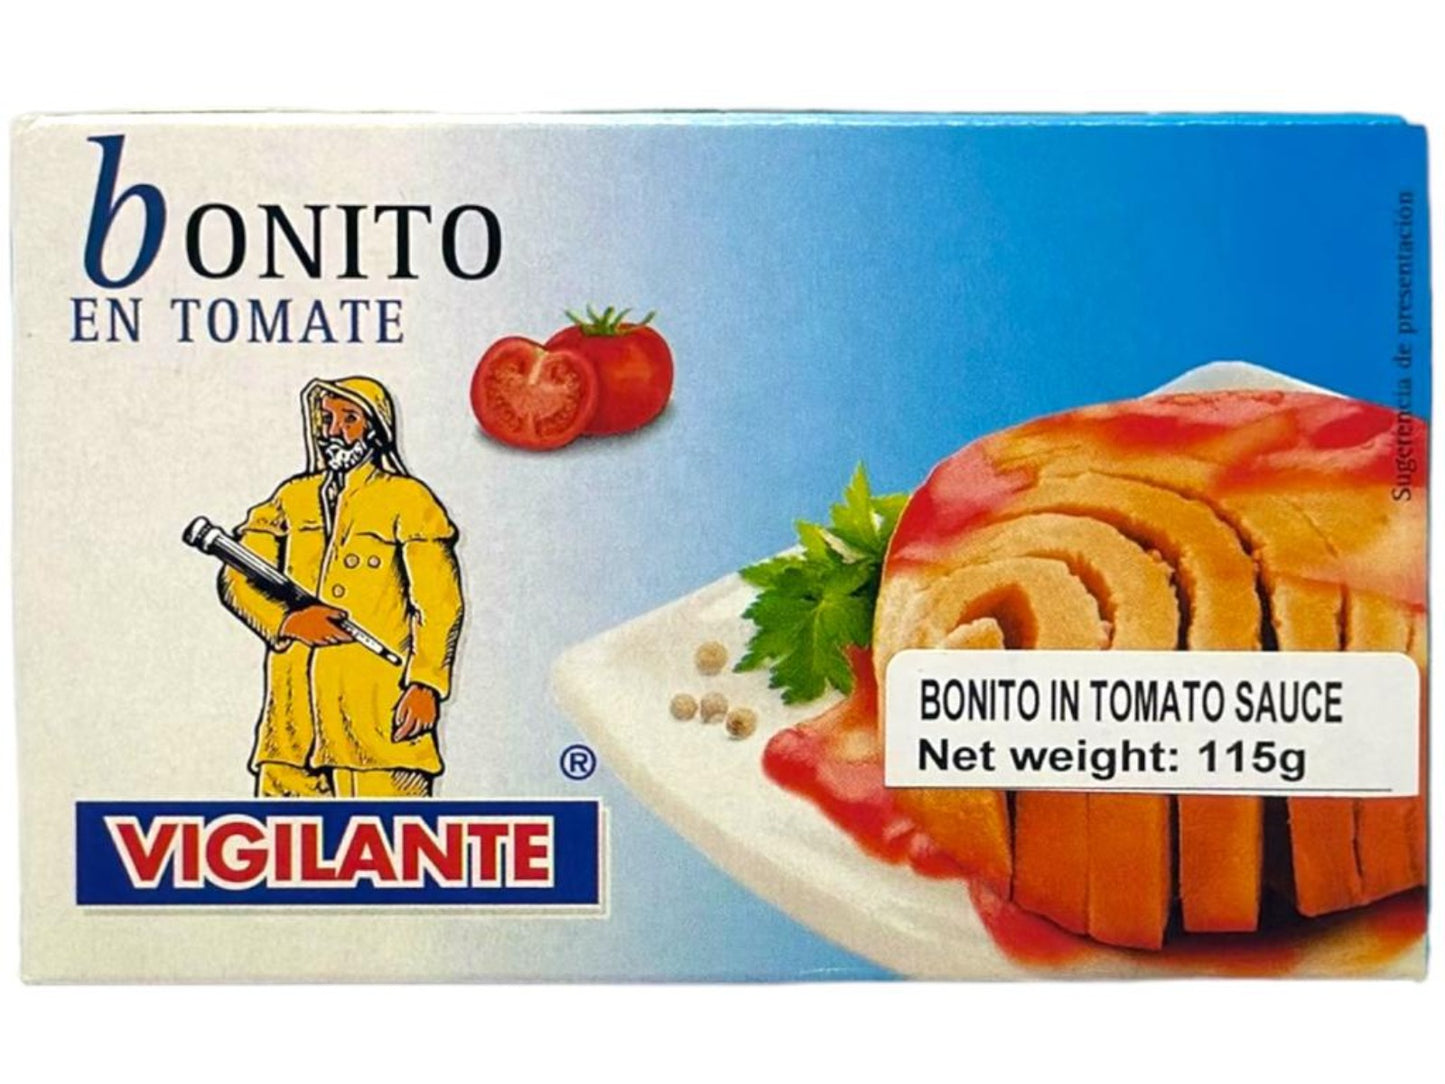 Vigilante Bonito en Tomate - Bonito in Tomato Sauce 115g